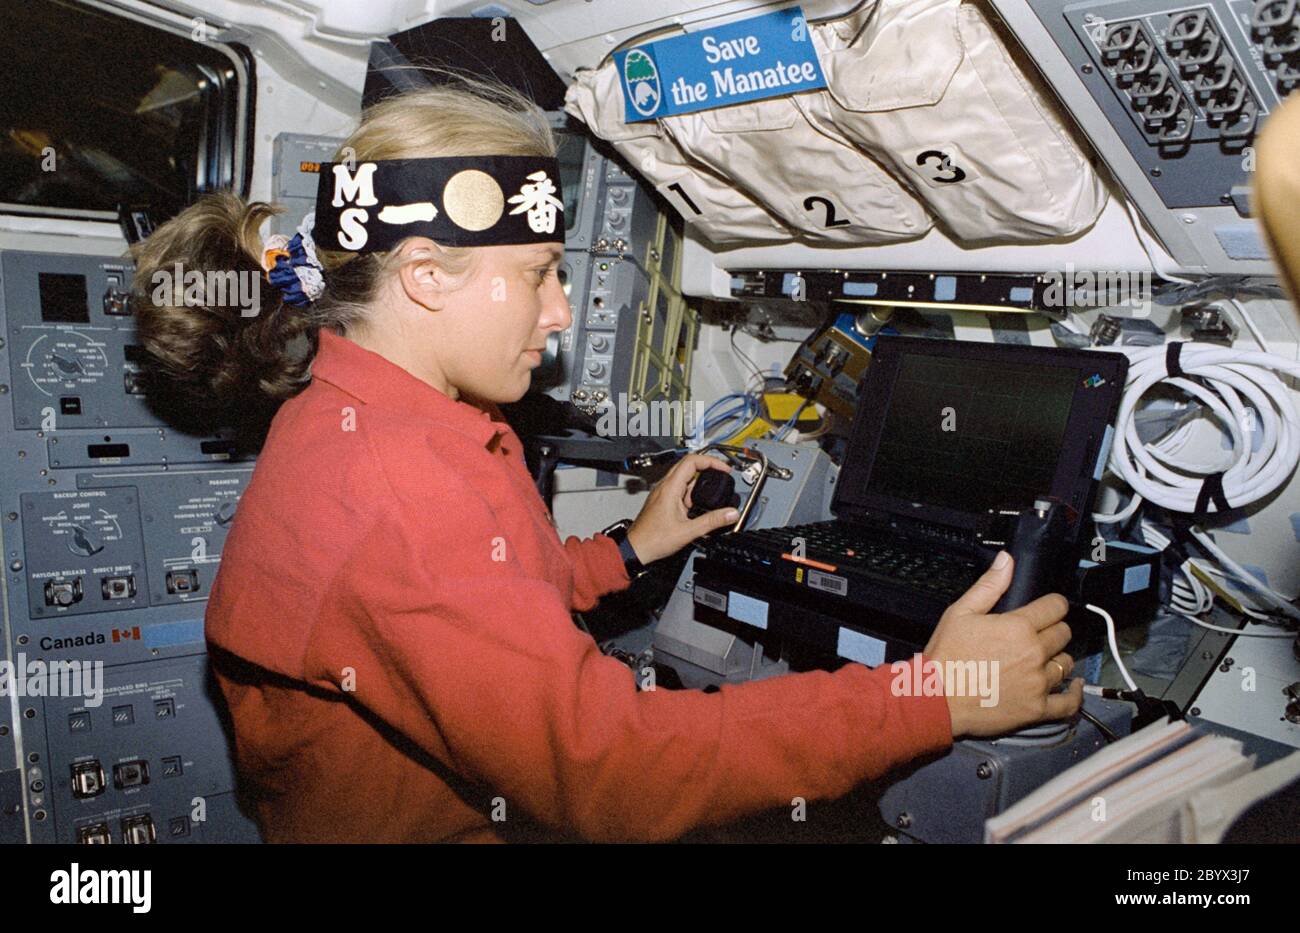 (7. - 19. August 1997) --- der Astronaut N. Jan Davis, der Kommandant der Nutzlast, führt MFD-Operationen auf der Arbeitsstation des Experiments durch, wenn er ein Stirnband trägt, das die Manipulator Flight Demonstration (MFD) Hardware mehrere Meter entfernt in der offenen Frachtschale des Space Shuttle Discovery darstellt. Dieser Flug des MFD ist in Vorbereitung für das japanische Experiment Module (JEM) Remote Manipulator System (RMS) Small Fine Arm (SFA). Stockfoto